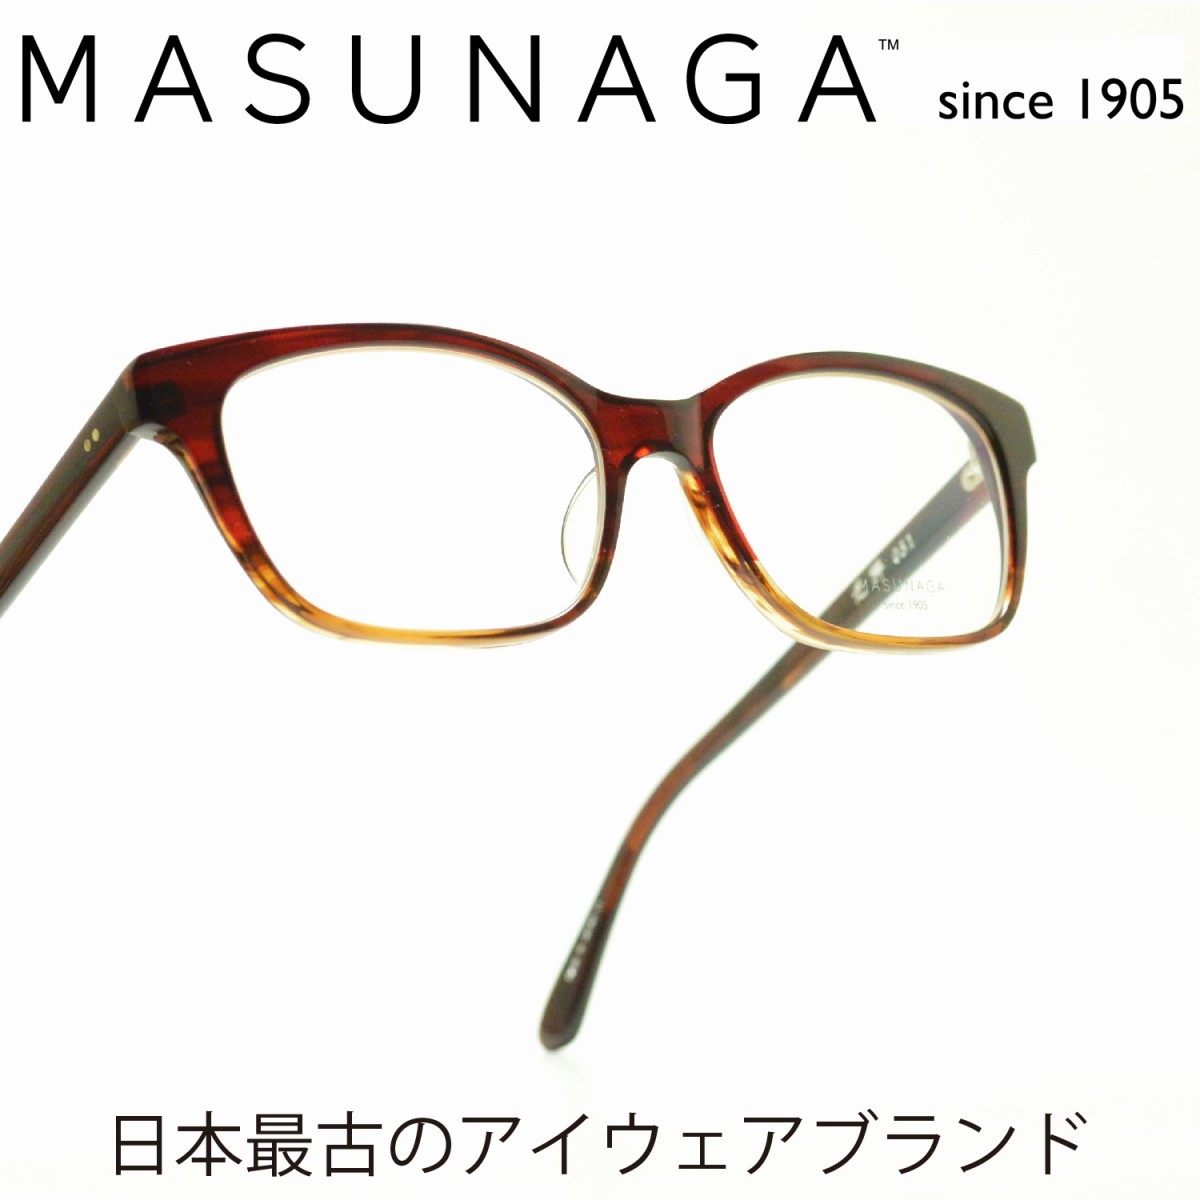 増永眼鏡 MASUNAGA 光輝 051 col-13 RED BR<br><br>メガネ 眼鏡 めがね メンズ レディース おしゃれ ブランド 人気 おすすめ フレーム 流行り 度付き　レンズ